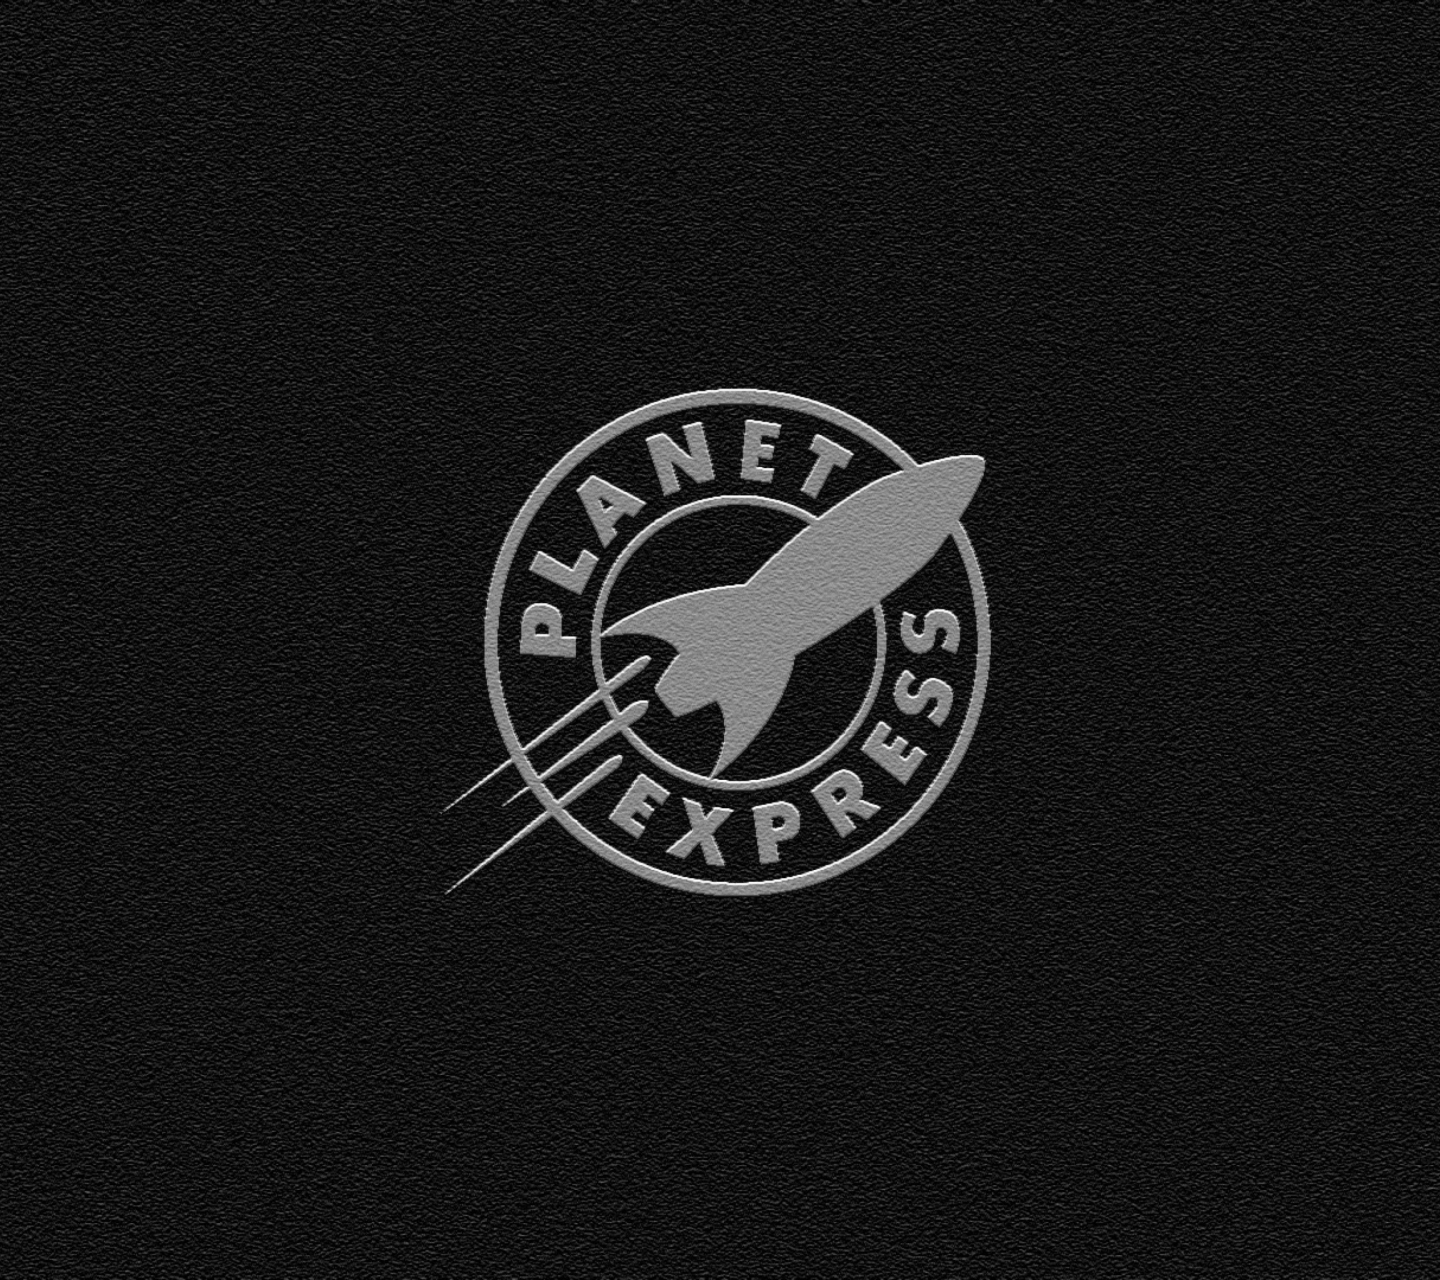 Planet Express screenshot #1 1440x1280